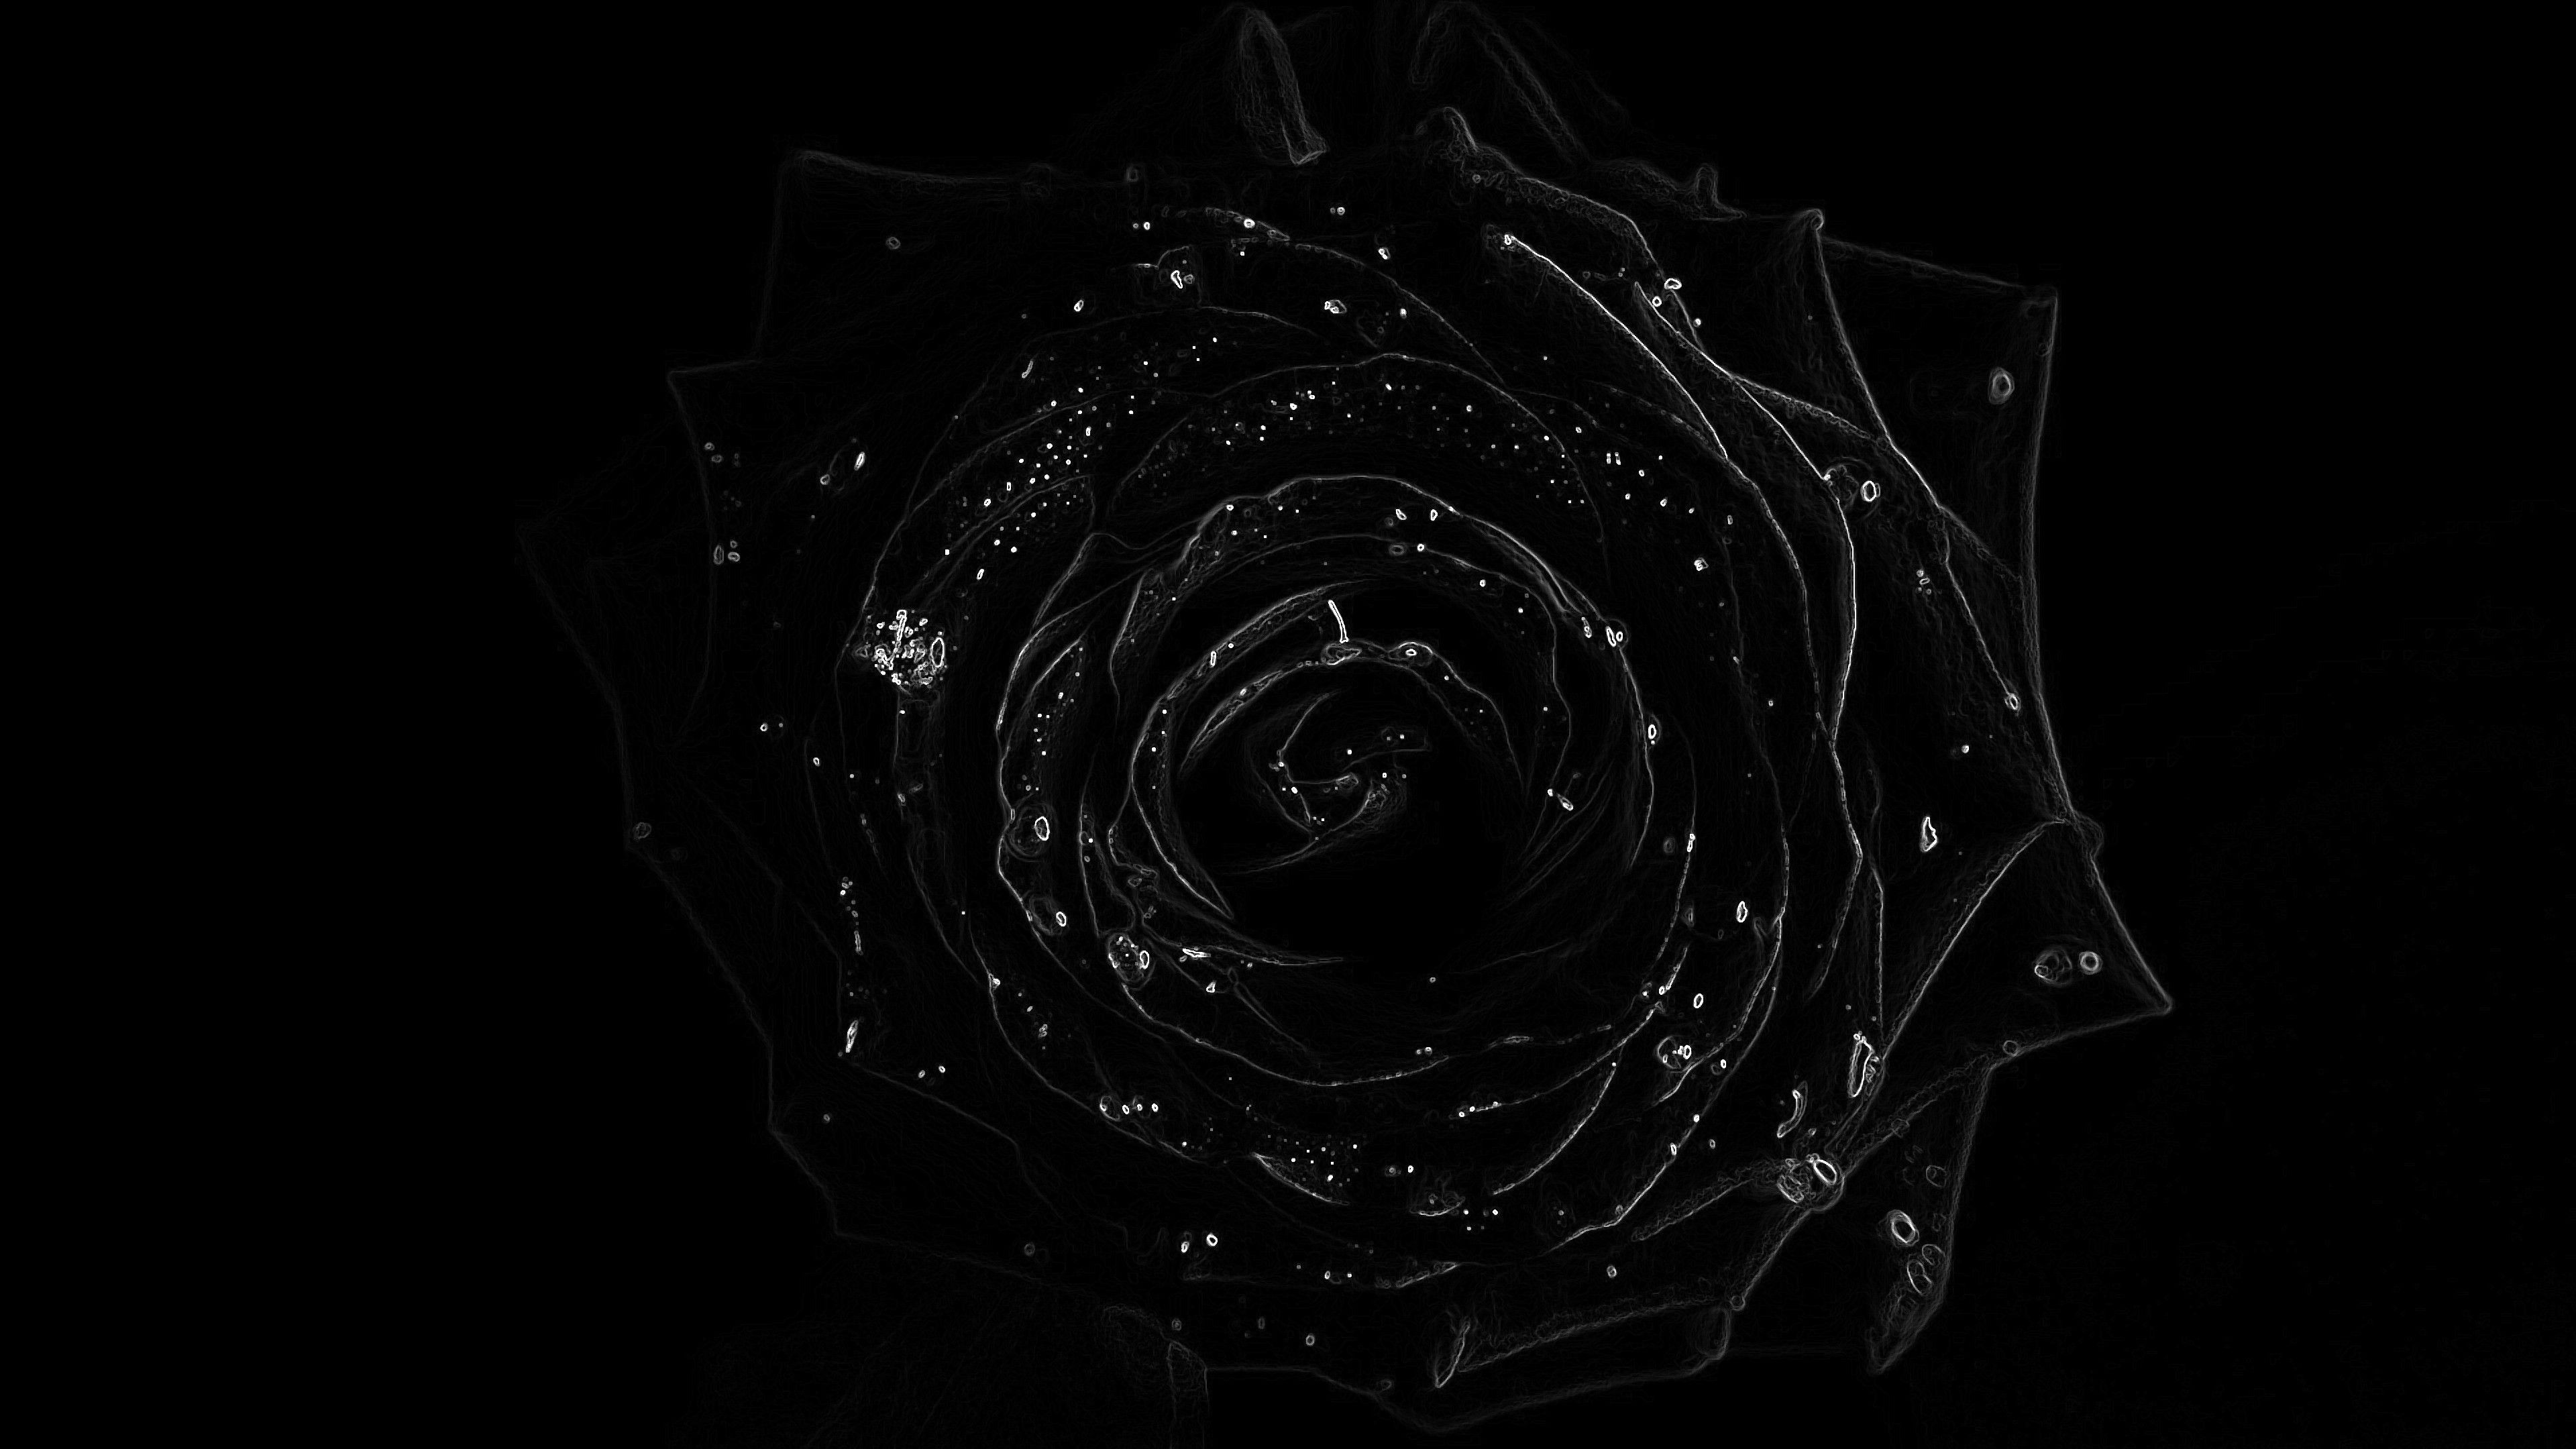 Dark Rose 4k Wallpapers sẽ khiến bạn phải yêu thích đam mê với những bông hoa huyền thoại này. Không chỉ sắc nét và đầy tinh tế, những bức ảnh này còn đưa ra một cái nhìn đặc biệt về sự đẹp đẽ của những bông hoa đen.